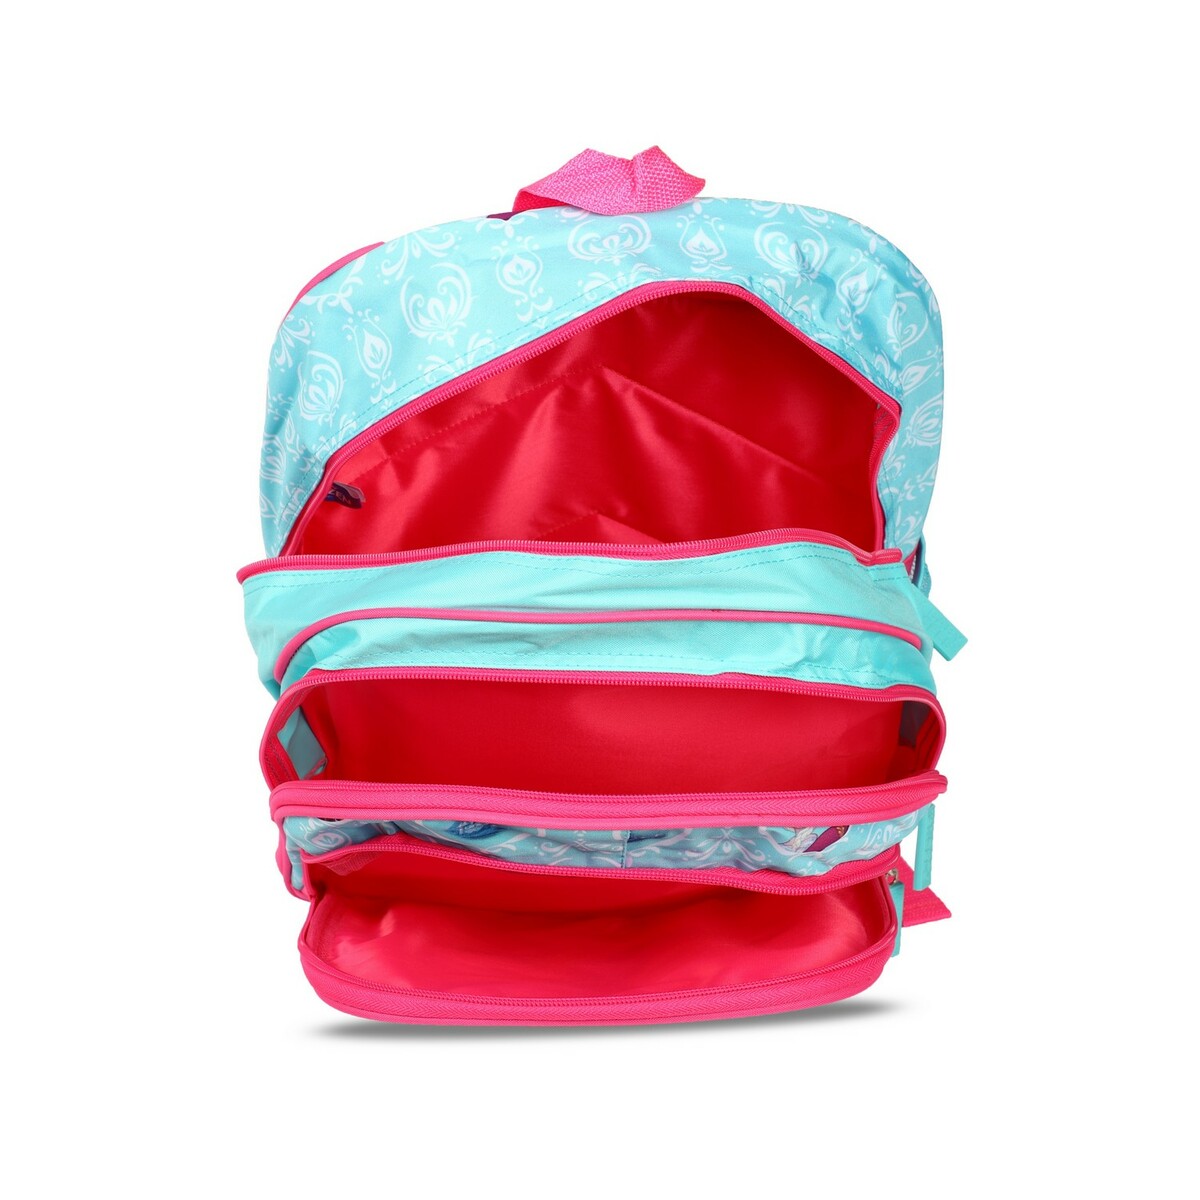 Frozen AnnaElsa Backpack16inch-WDP1513